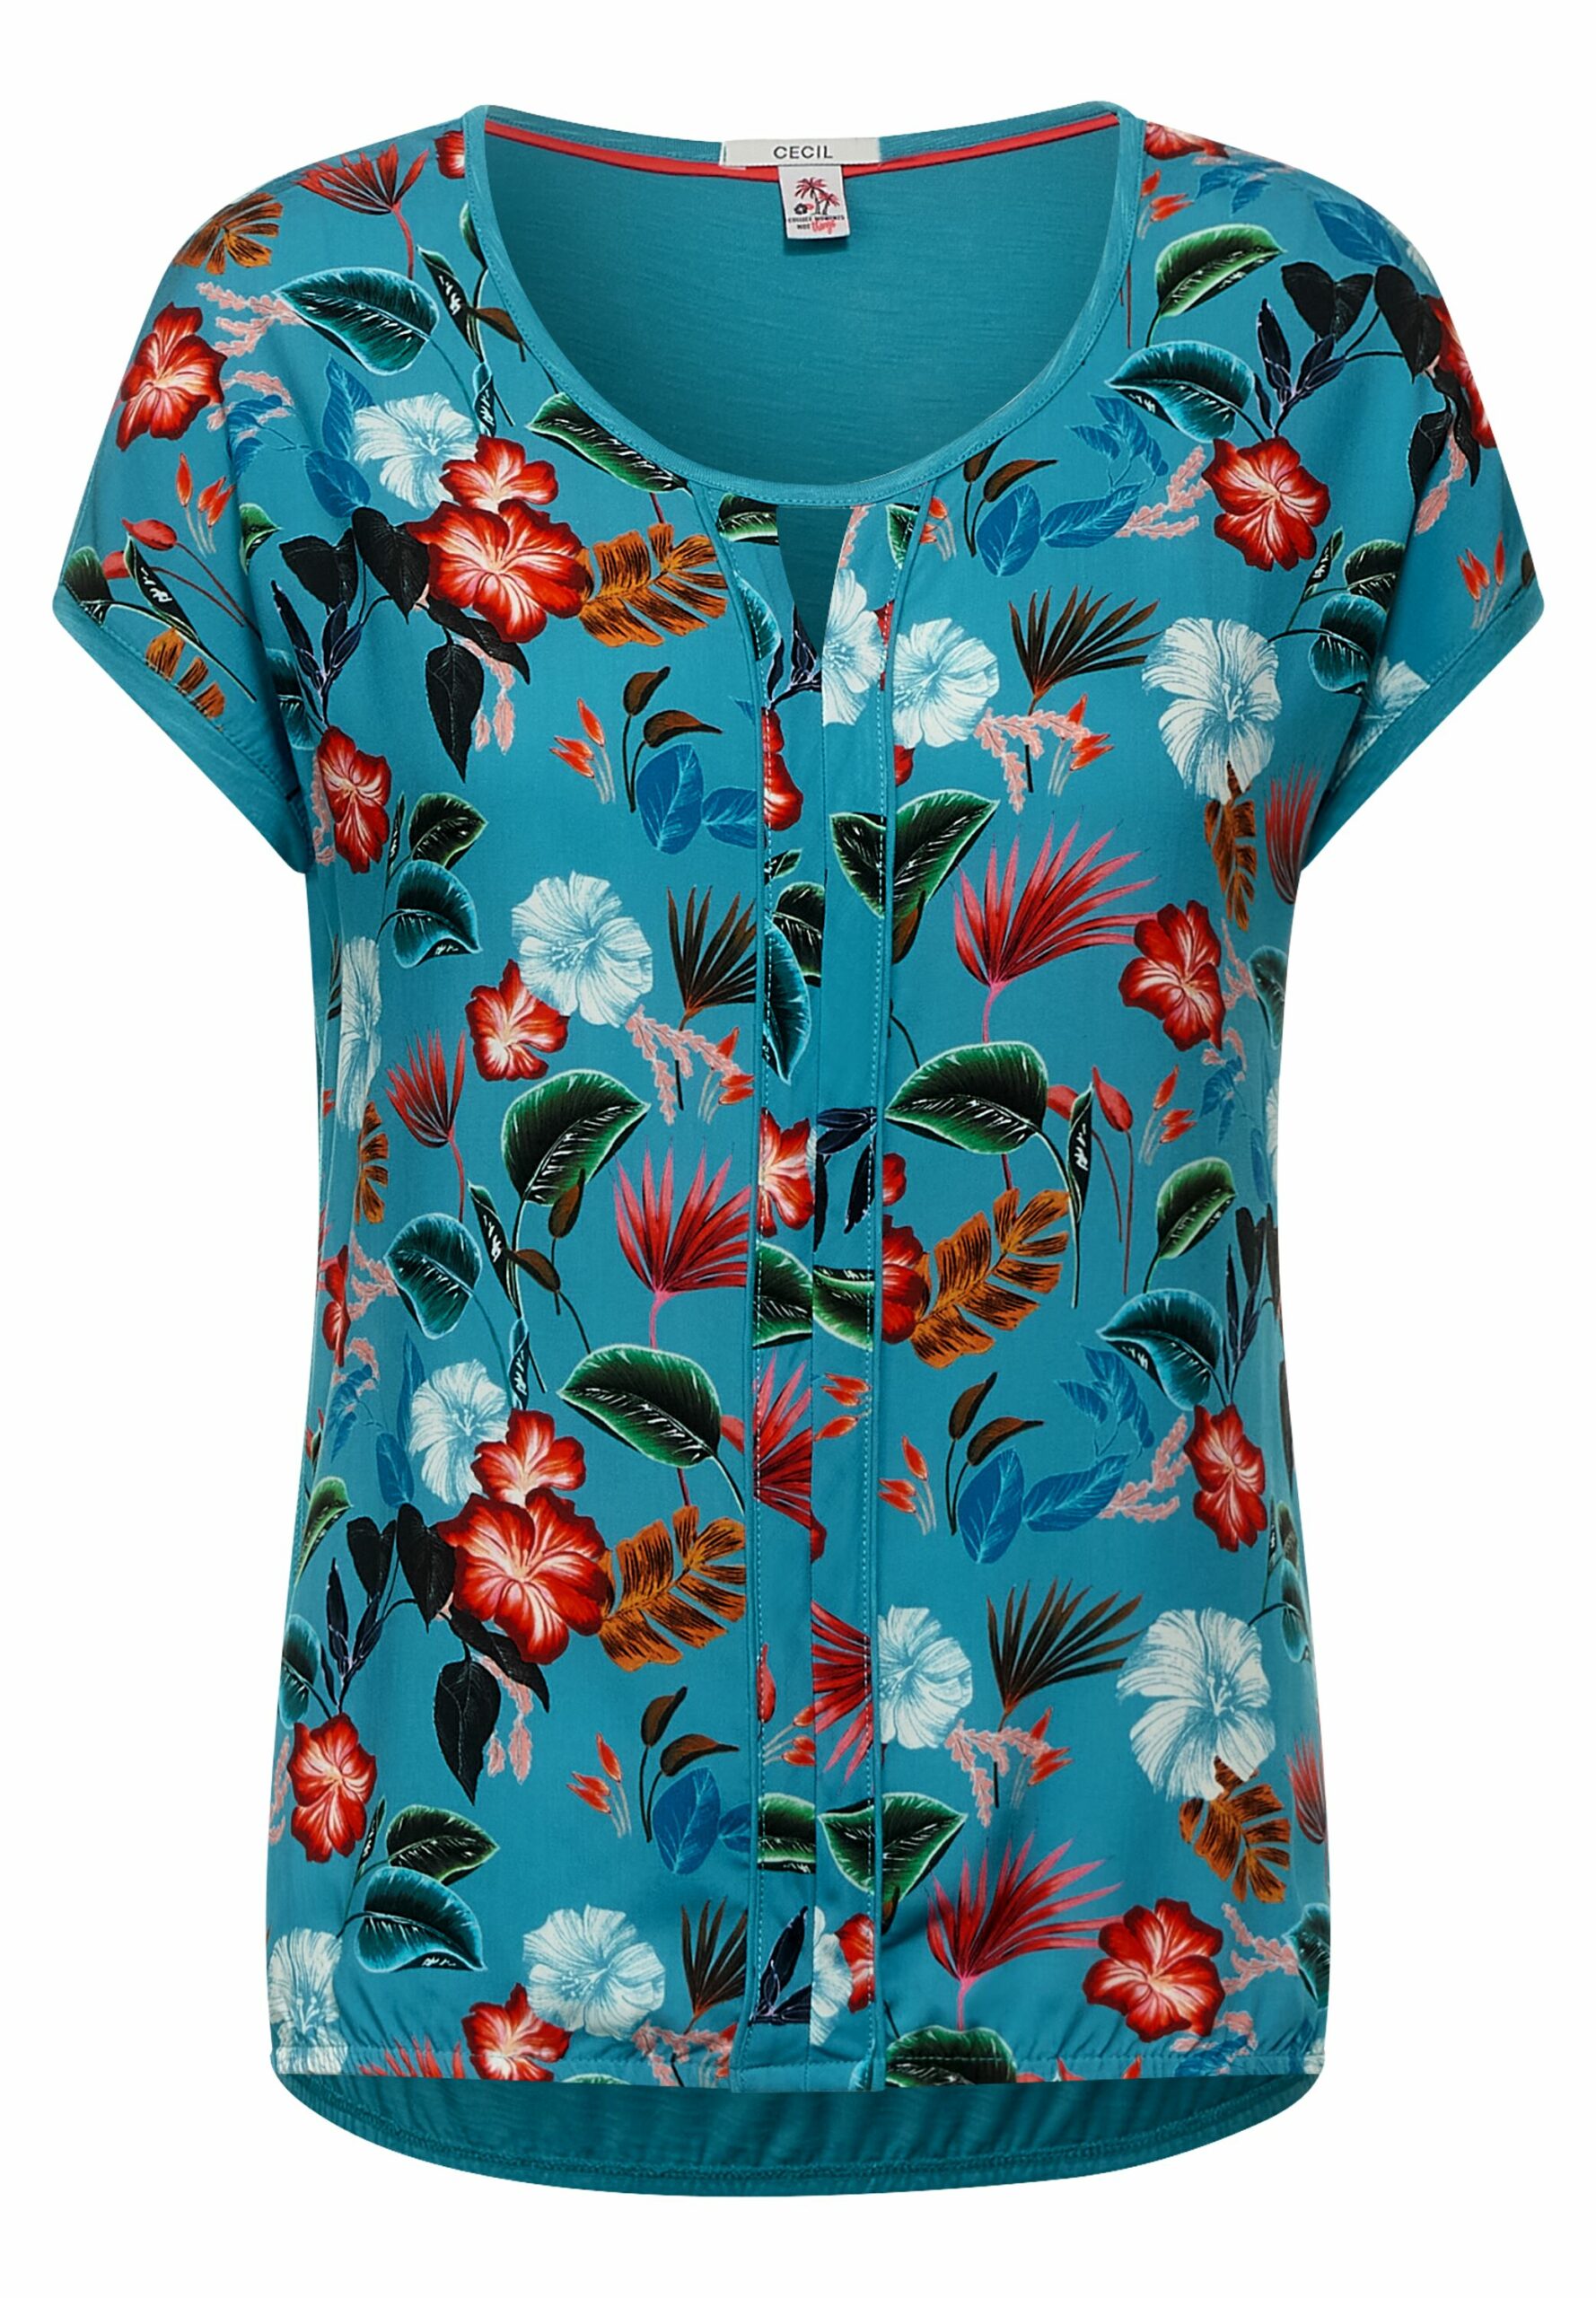 Modehaus - T-Shirt Fahr - Blumen Print Onlineshop CECIL mit